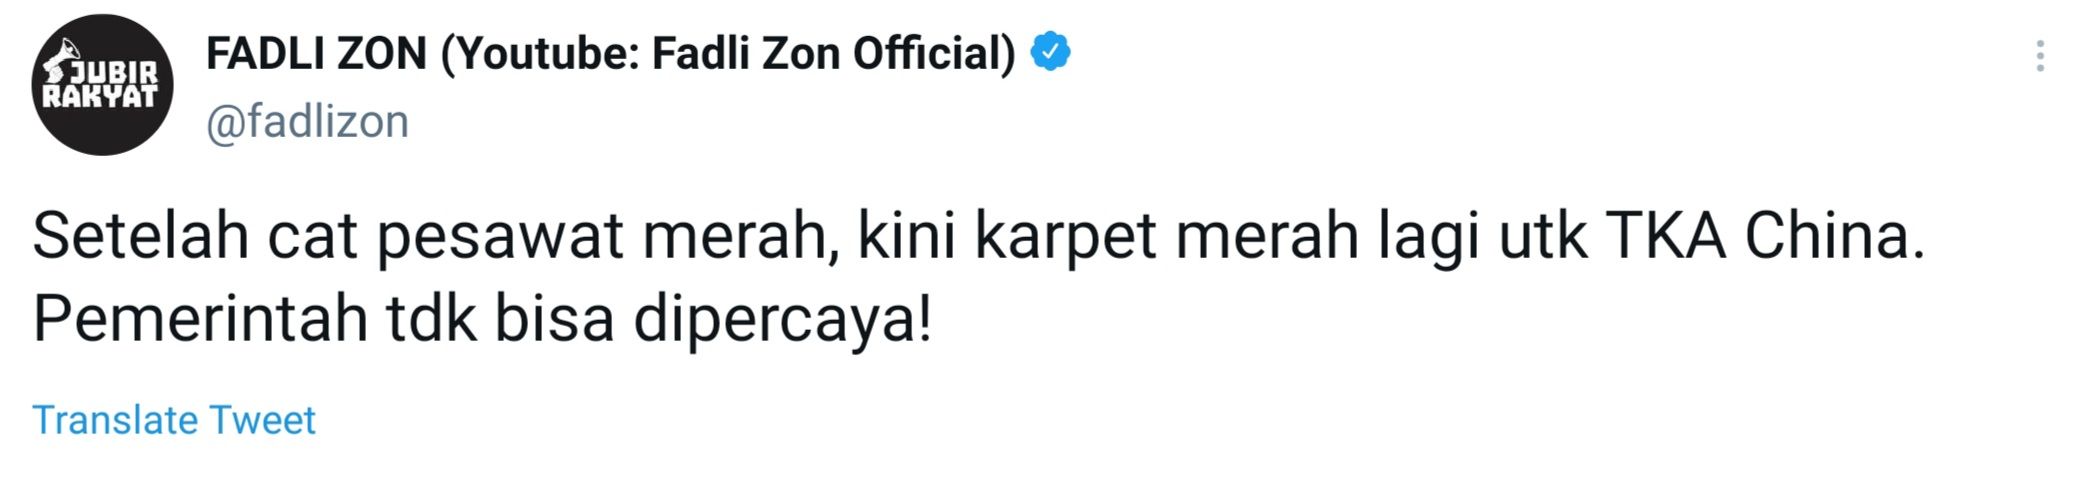 Cuitan Anggota DPR RI Fraksi Gerindra, Fadli Zon